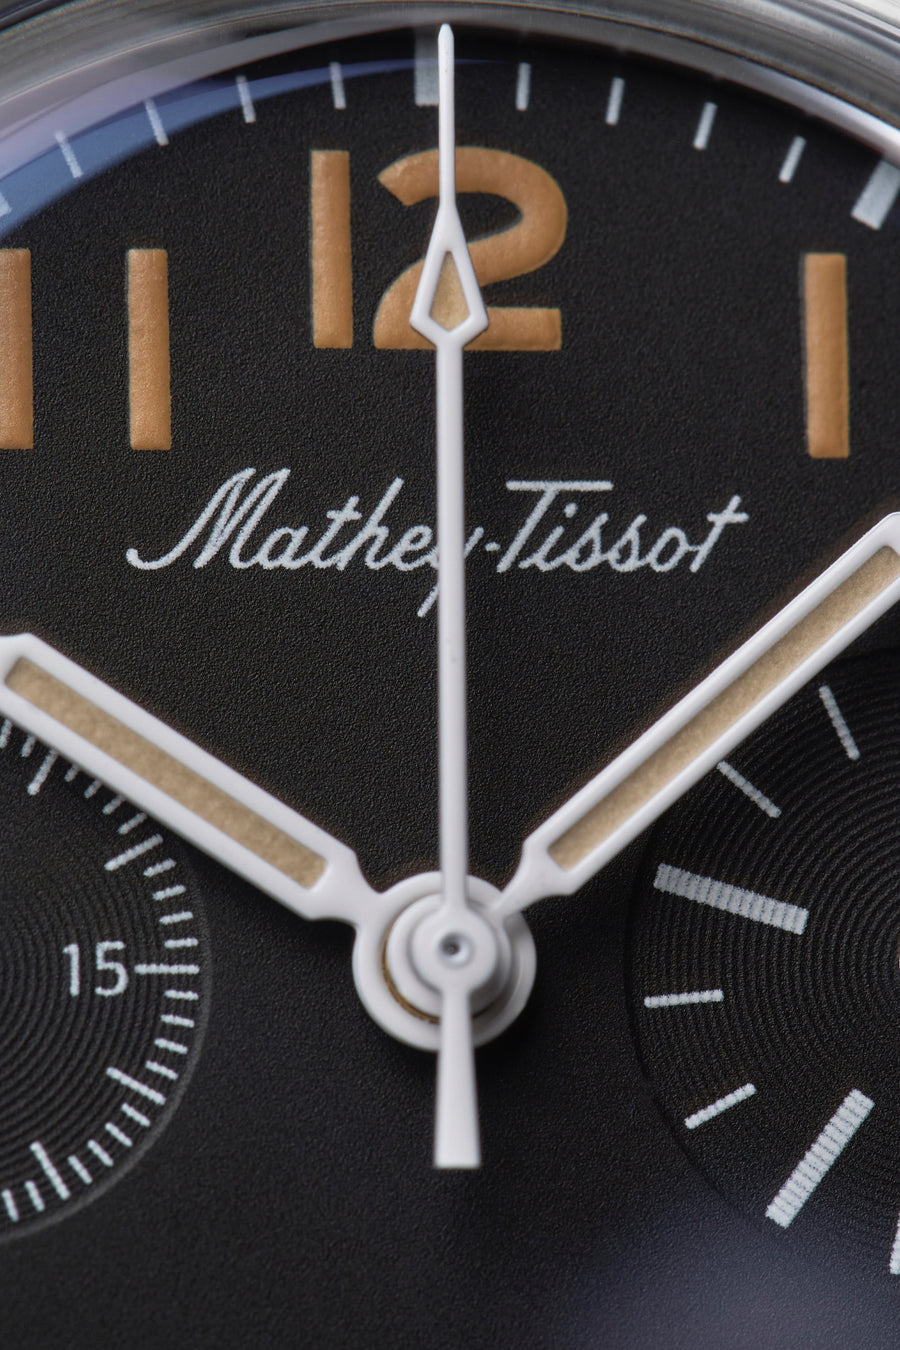 Mathey-Tissot x Massena LAB Type XX Flyback Chronograph